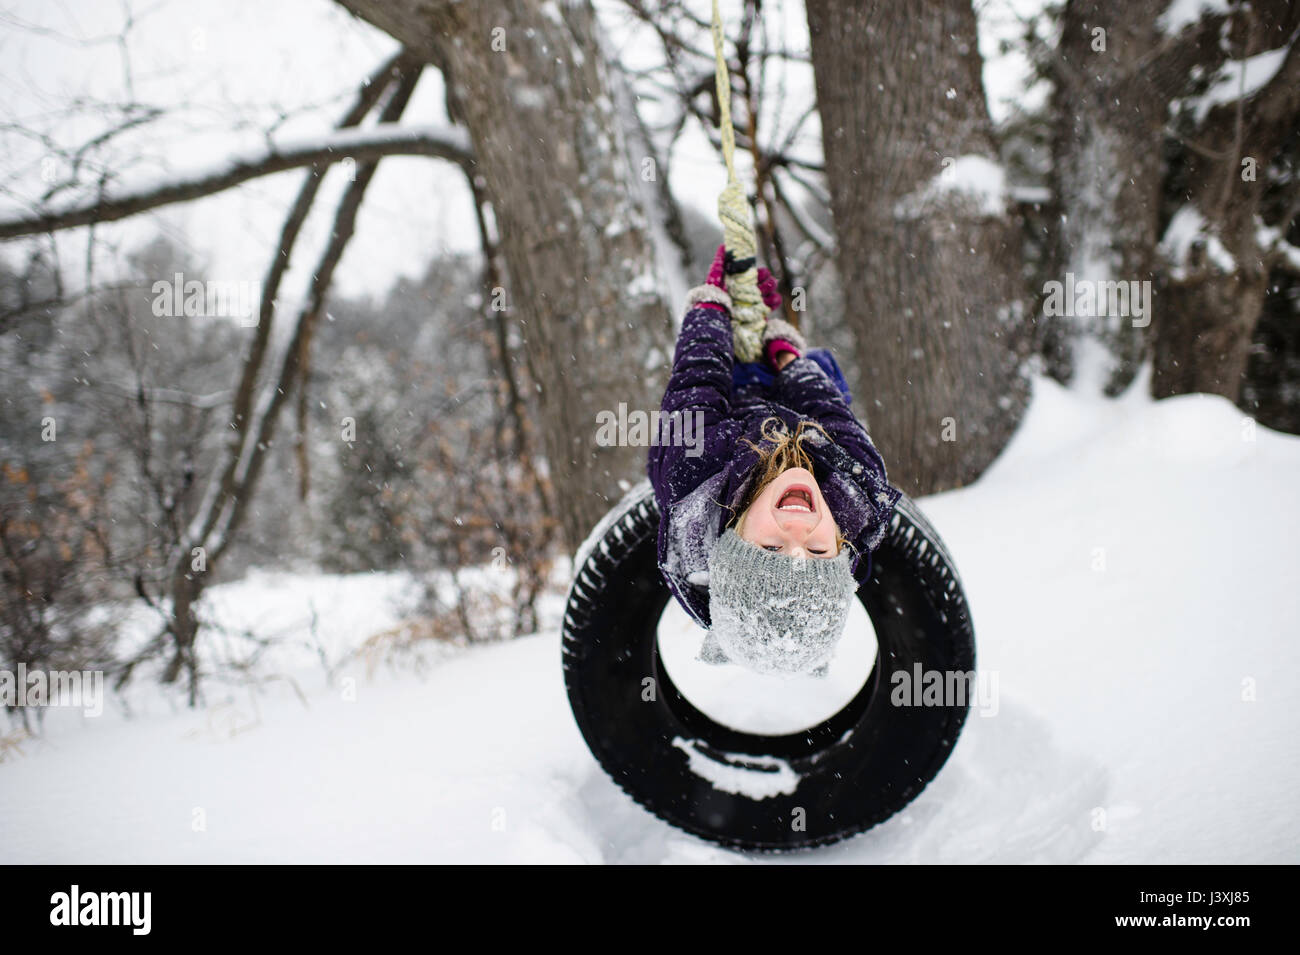 Jeune fille à l'envers sur balançoire pneu dans la neige Banque D'Images